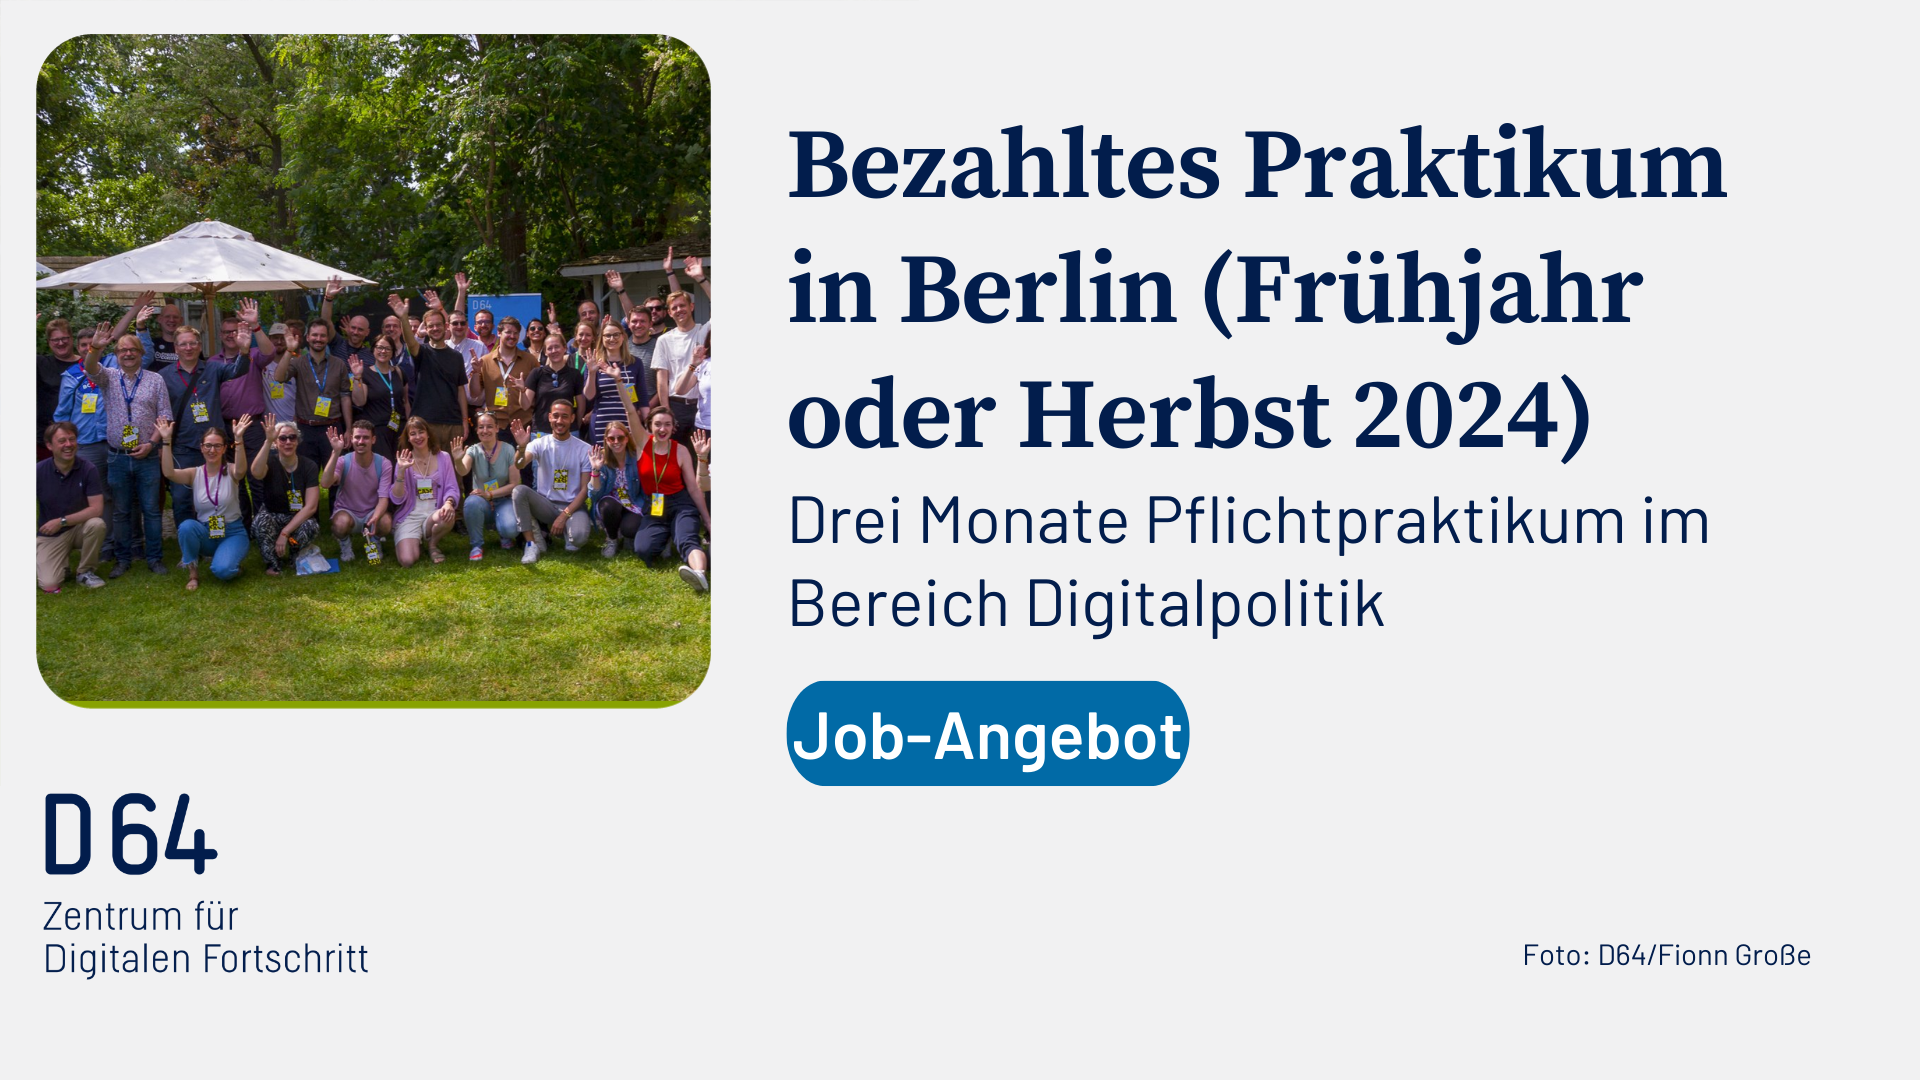 Bezahltes Praktikum in Berlin (Frühjahr oder Herbst 2024), Drei Monate Pflichtpraktikum im Bereich Digitalpolitik, Job-Angebot